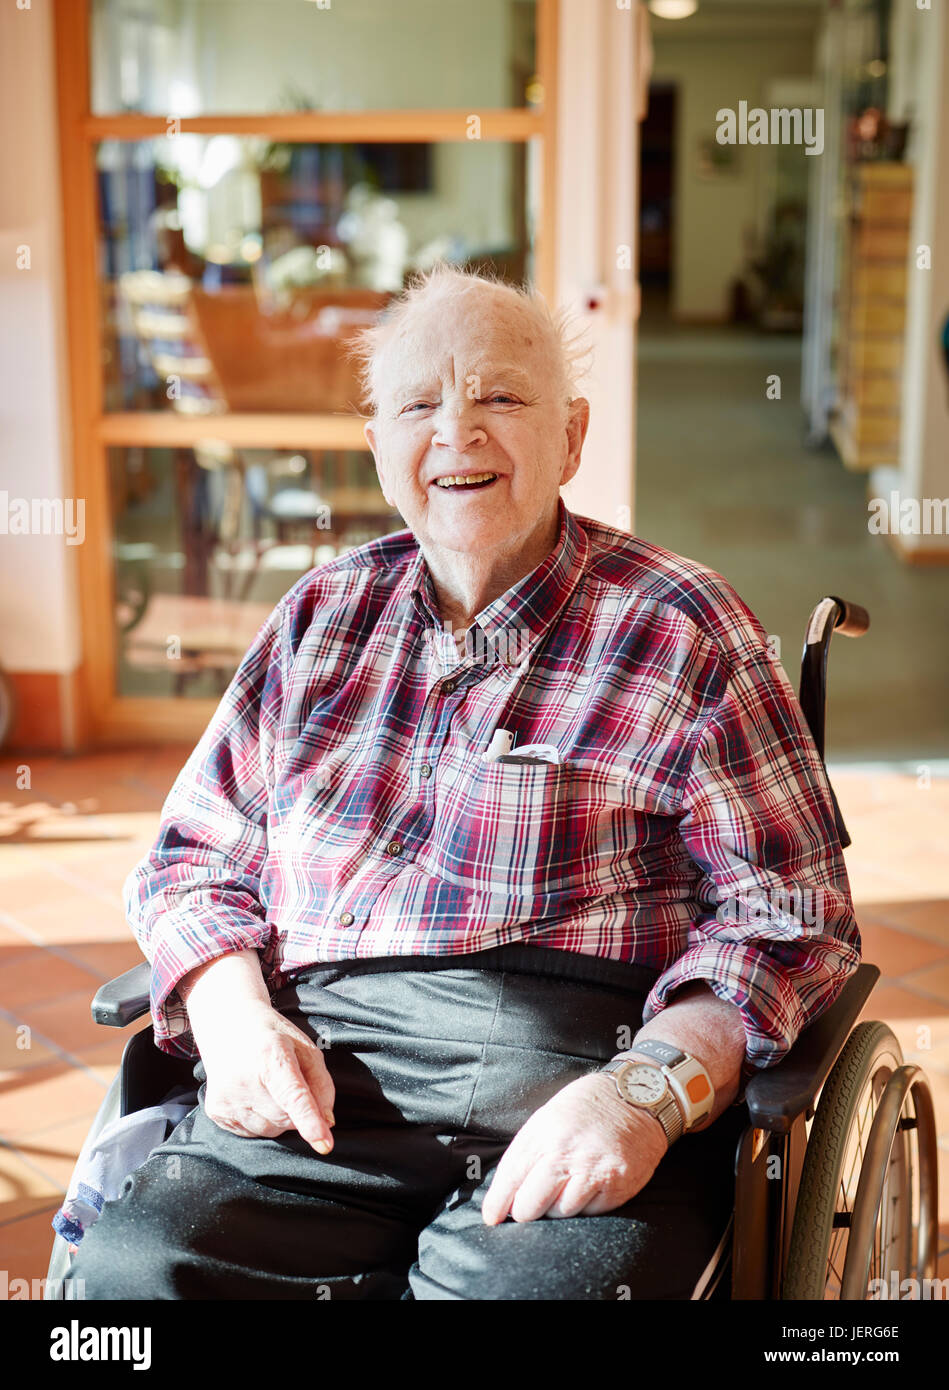 Smiling senior man on wheelchair Stock Photo